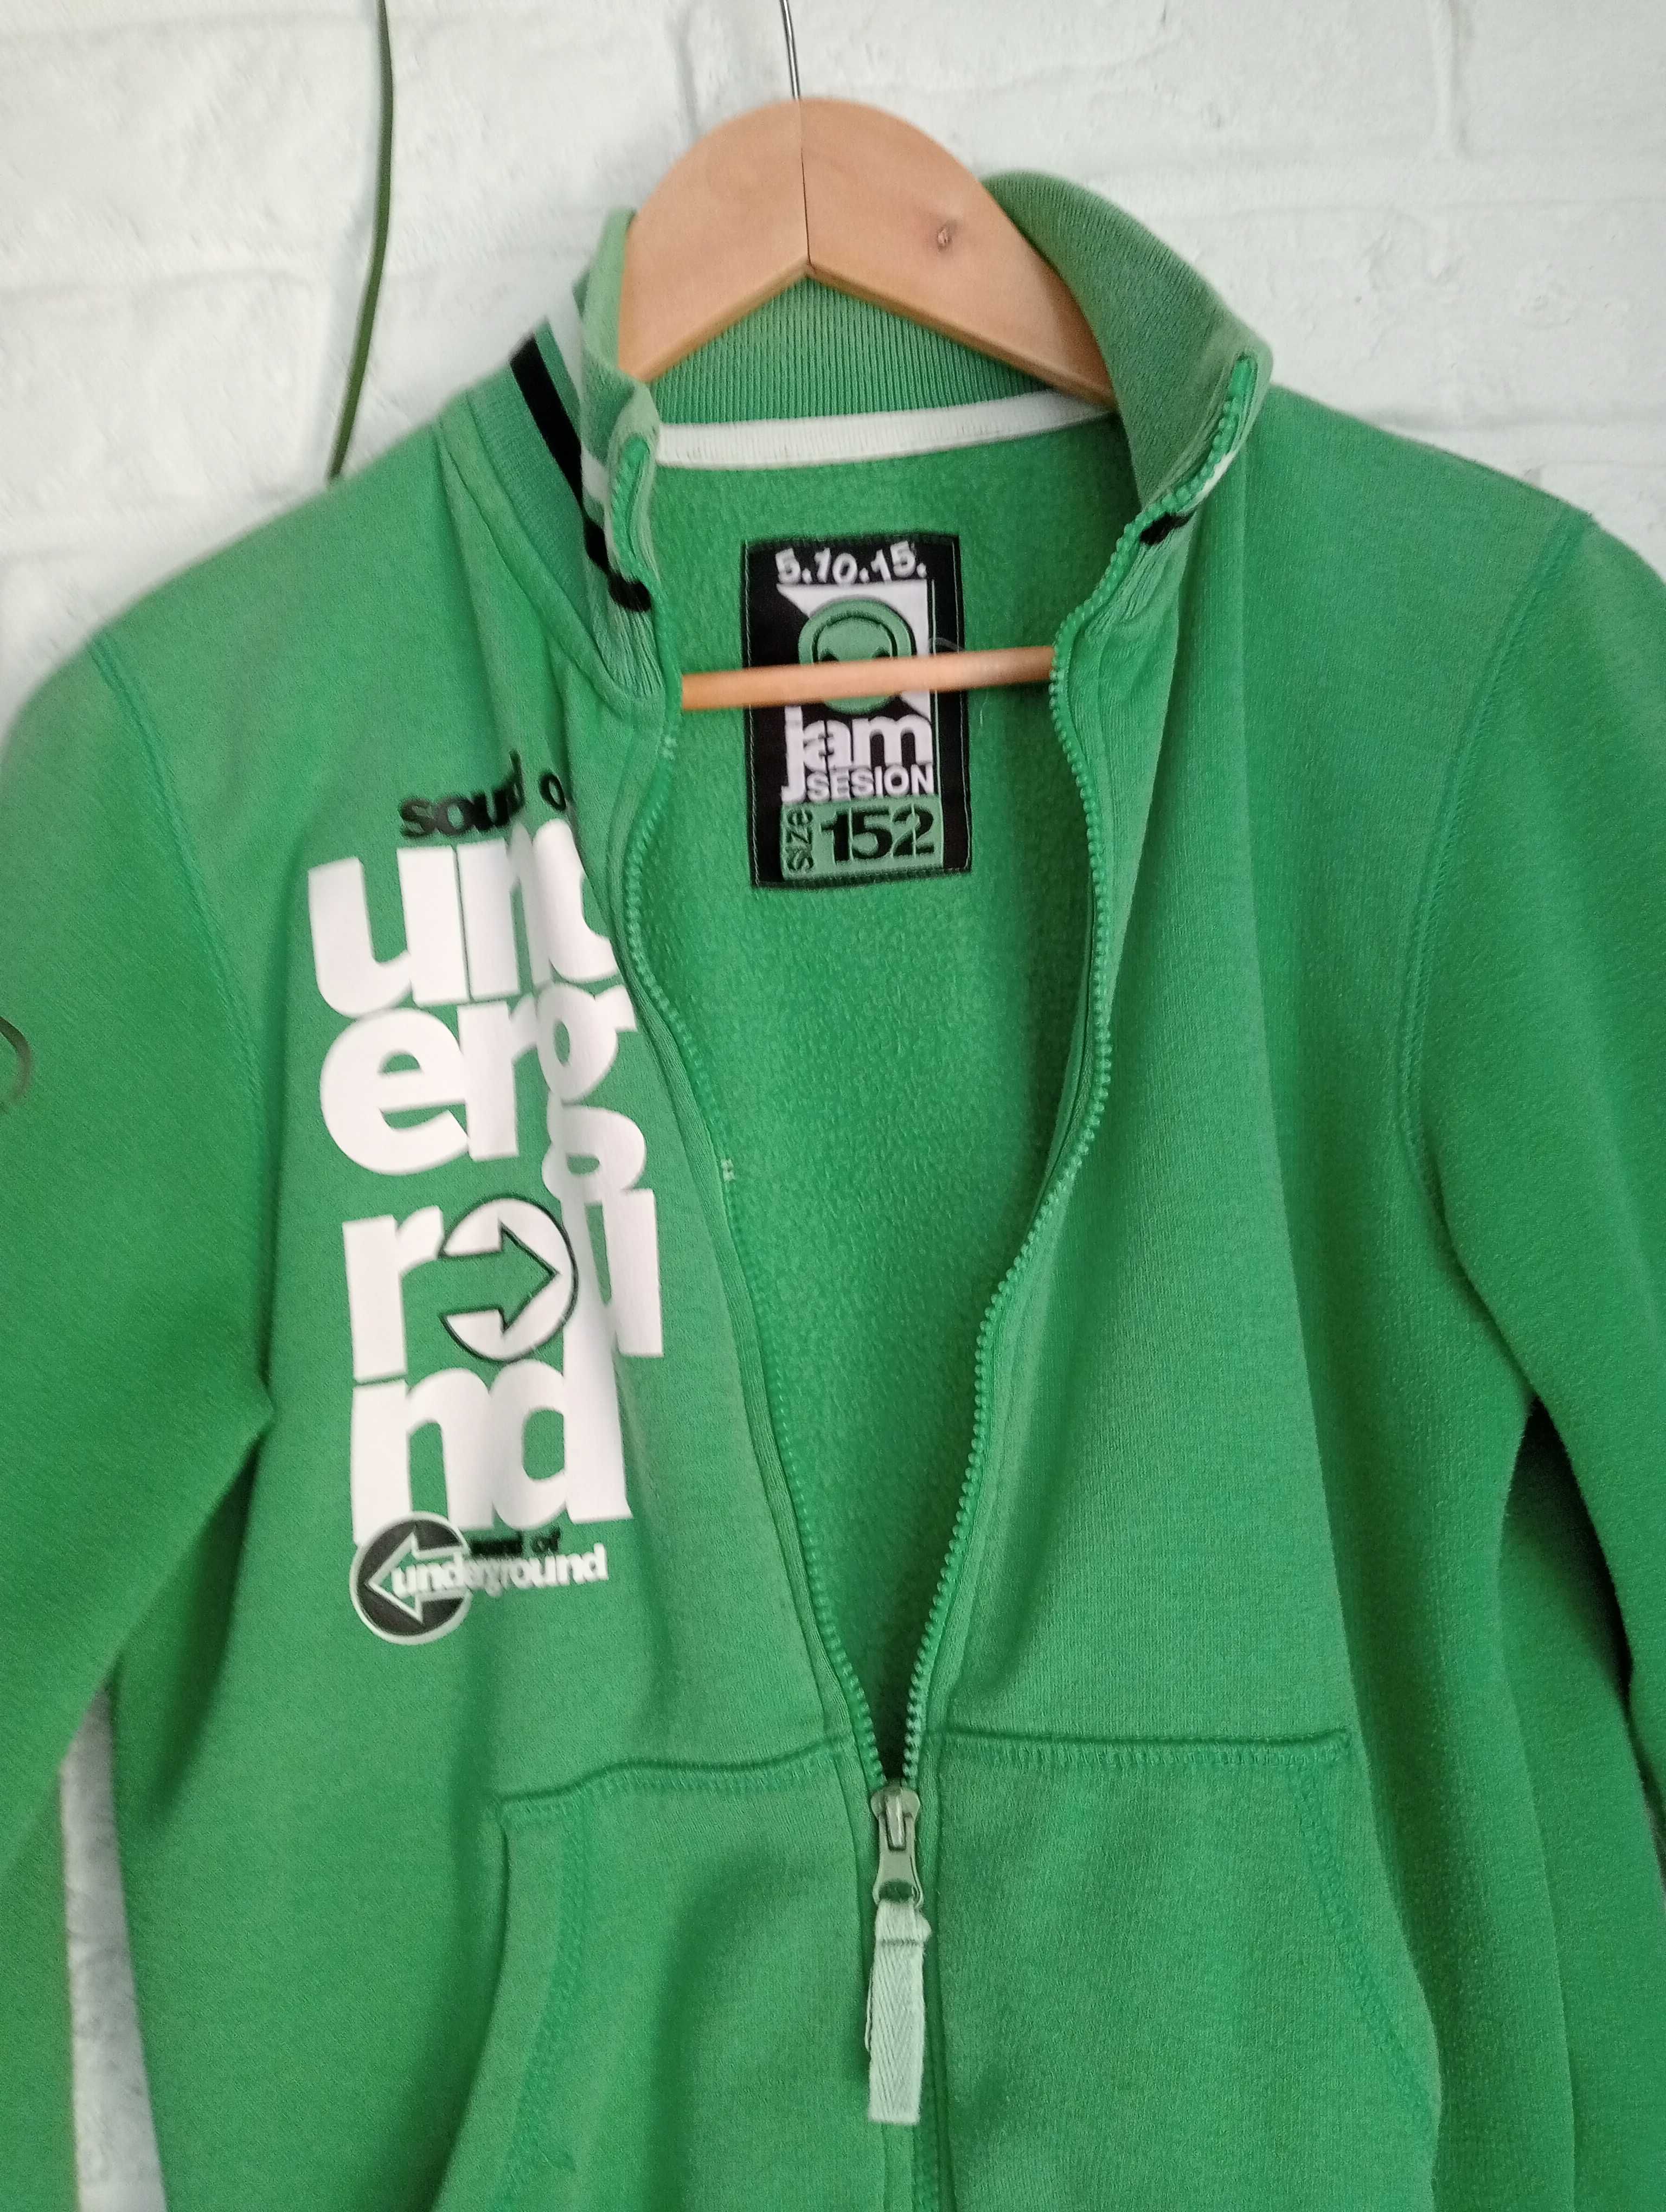 Bluza rozsuwana zielona dla chłopca wzrost:152 cm 5.10.15.